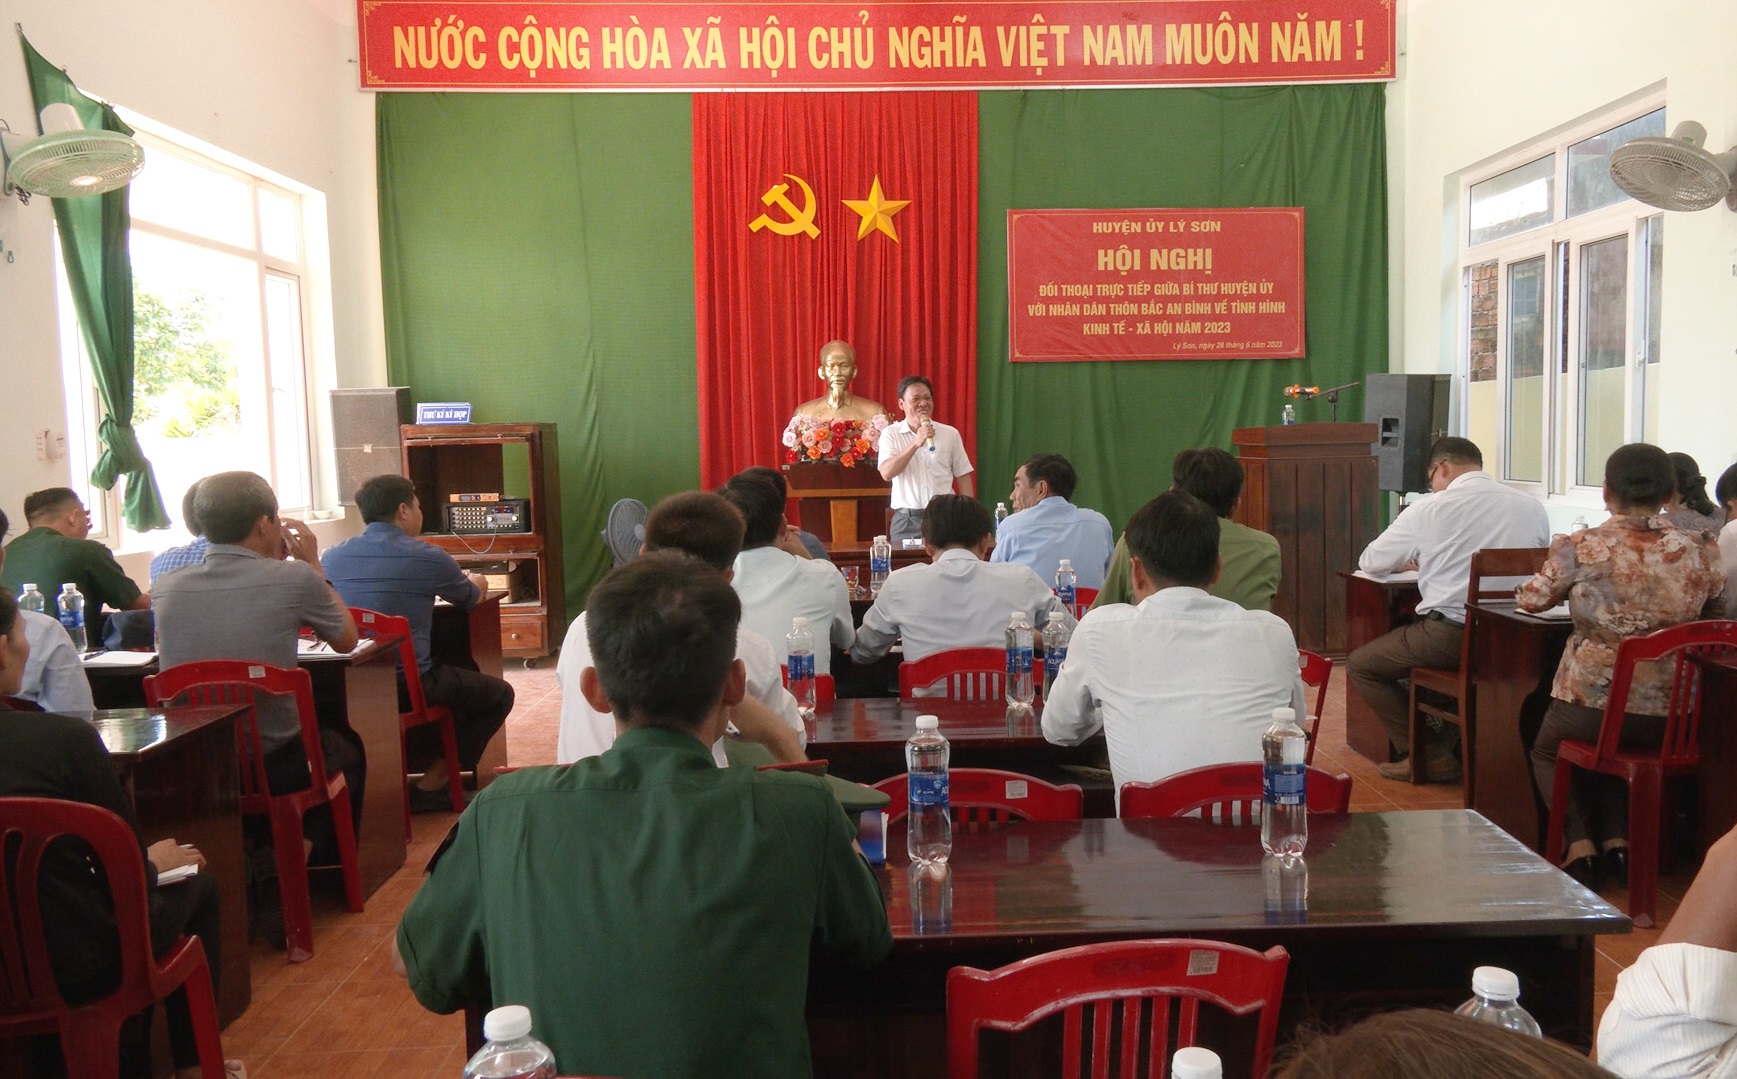 Bí thư Huyện uỷ Lý Sơn Nguyễn Minh Trí đã đối thoại trực tiếp với người dân đảo Bé (An Bình)